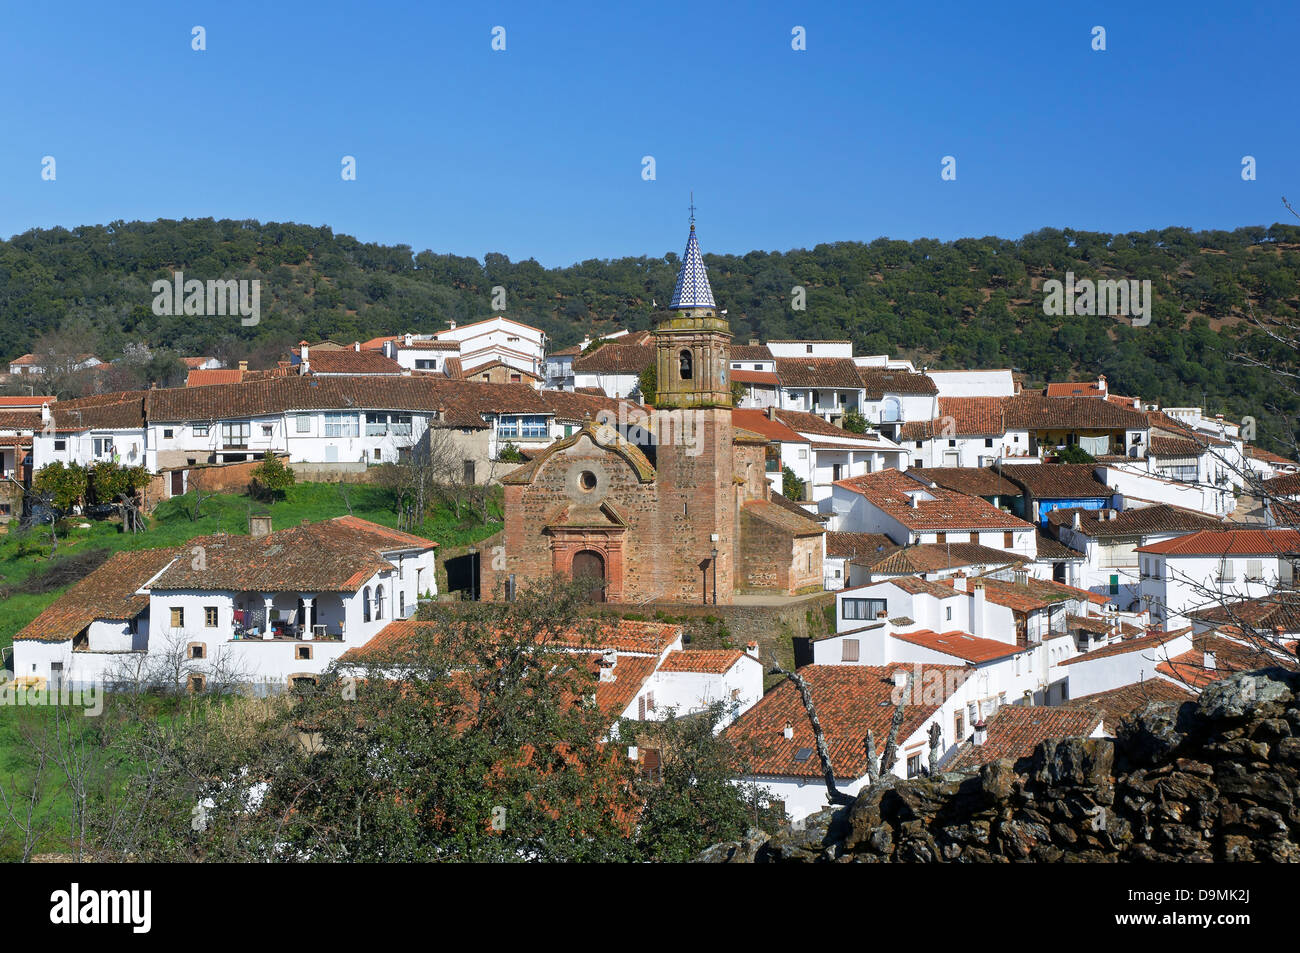 Vue panoramique, valdelarco, huelva-province, région d'Andalousie, Espagne, Europe Banque D'Images